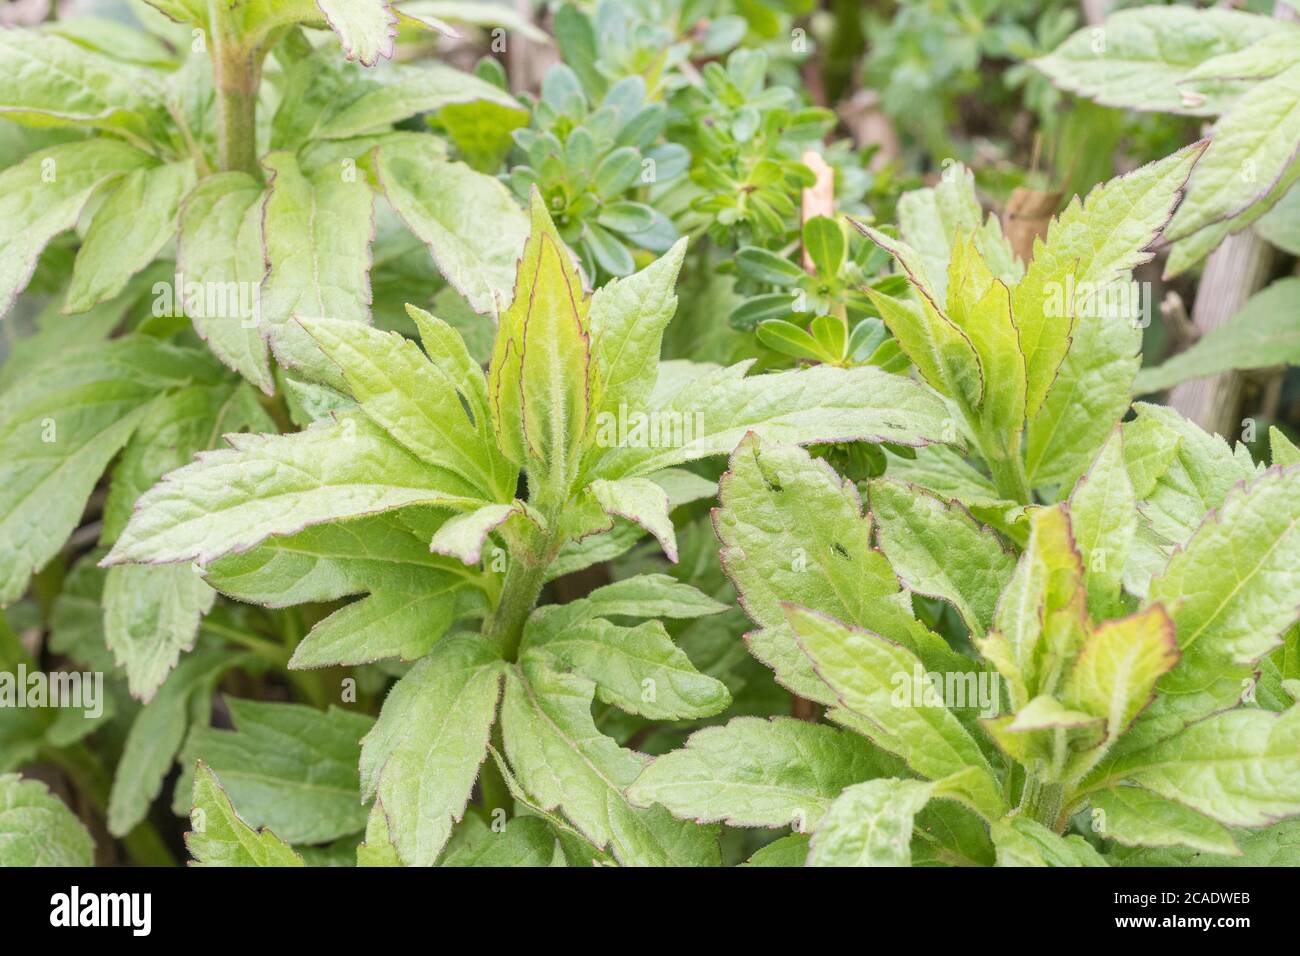 Les premières feuilles de printemps de Hemp Agrimony / Eupatorium cannabinum, une mauvaise herbe britannique commune autrefois utilisée comme plante médicinale dans les remèdes à base de plantes. Banque D'Images